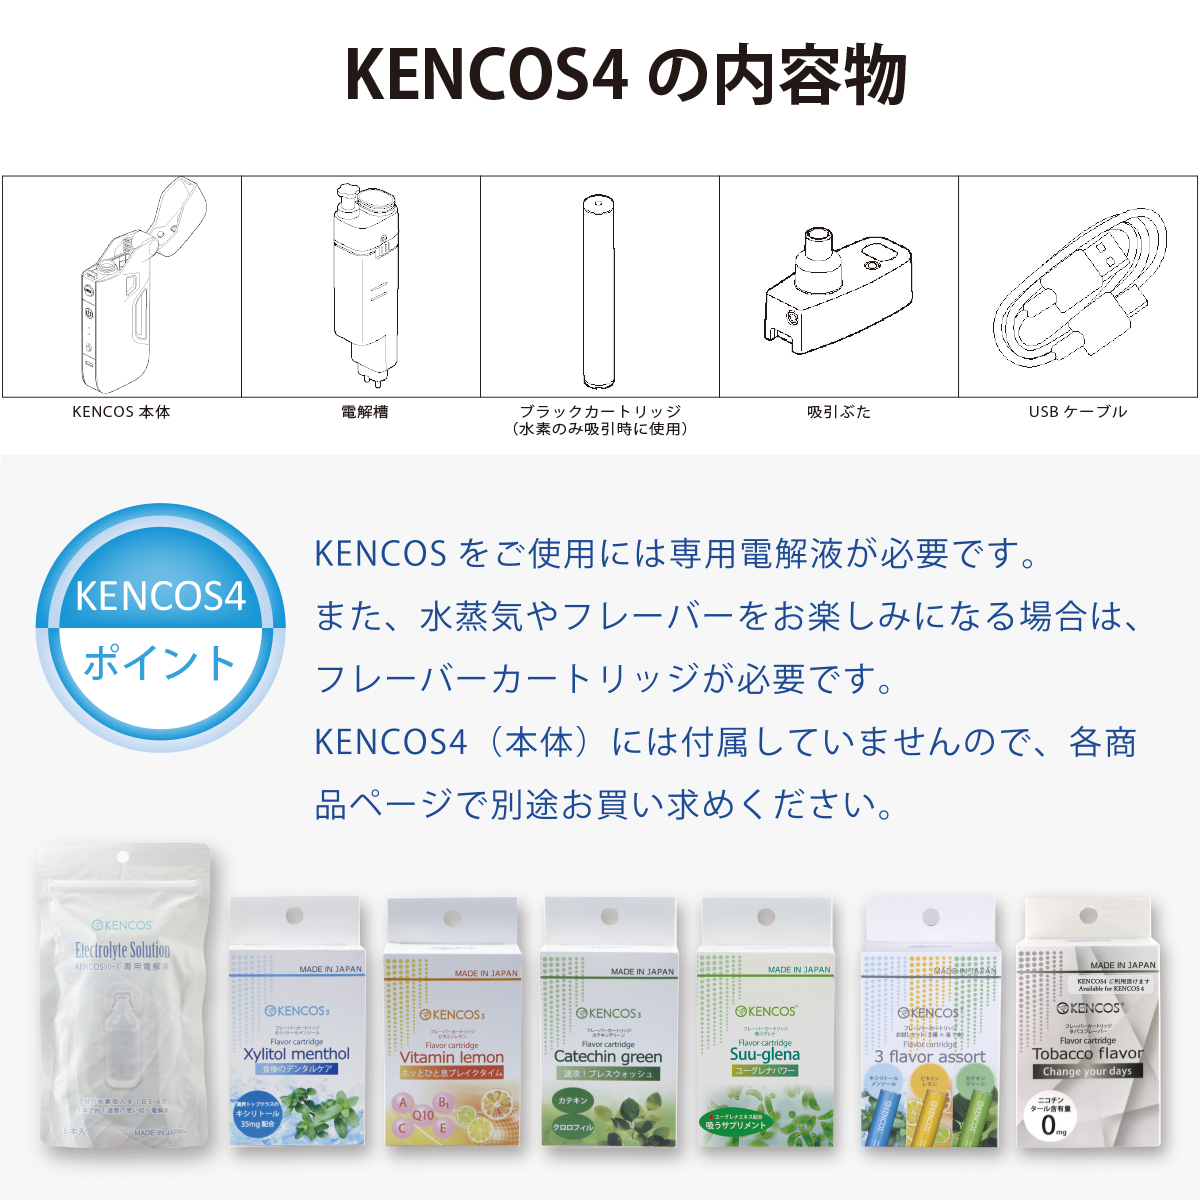 あの携帯できるポータブル水素ガス吸引具からKENCOS4が発売ｌ新機能が 